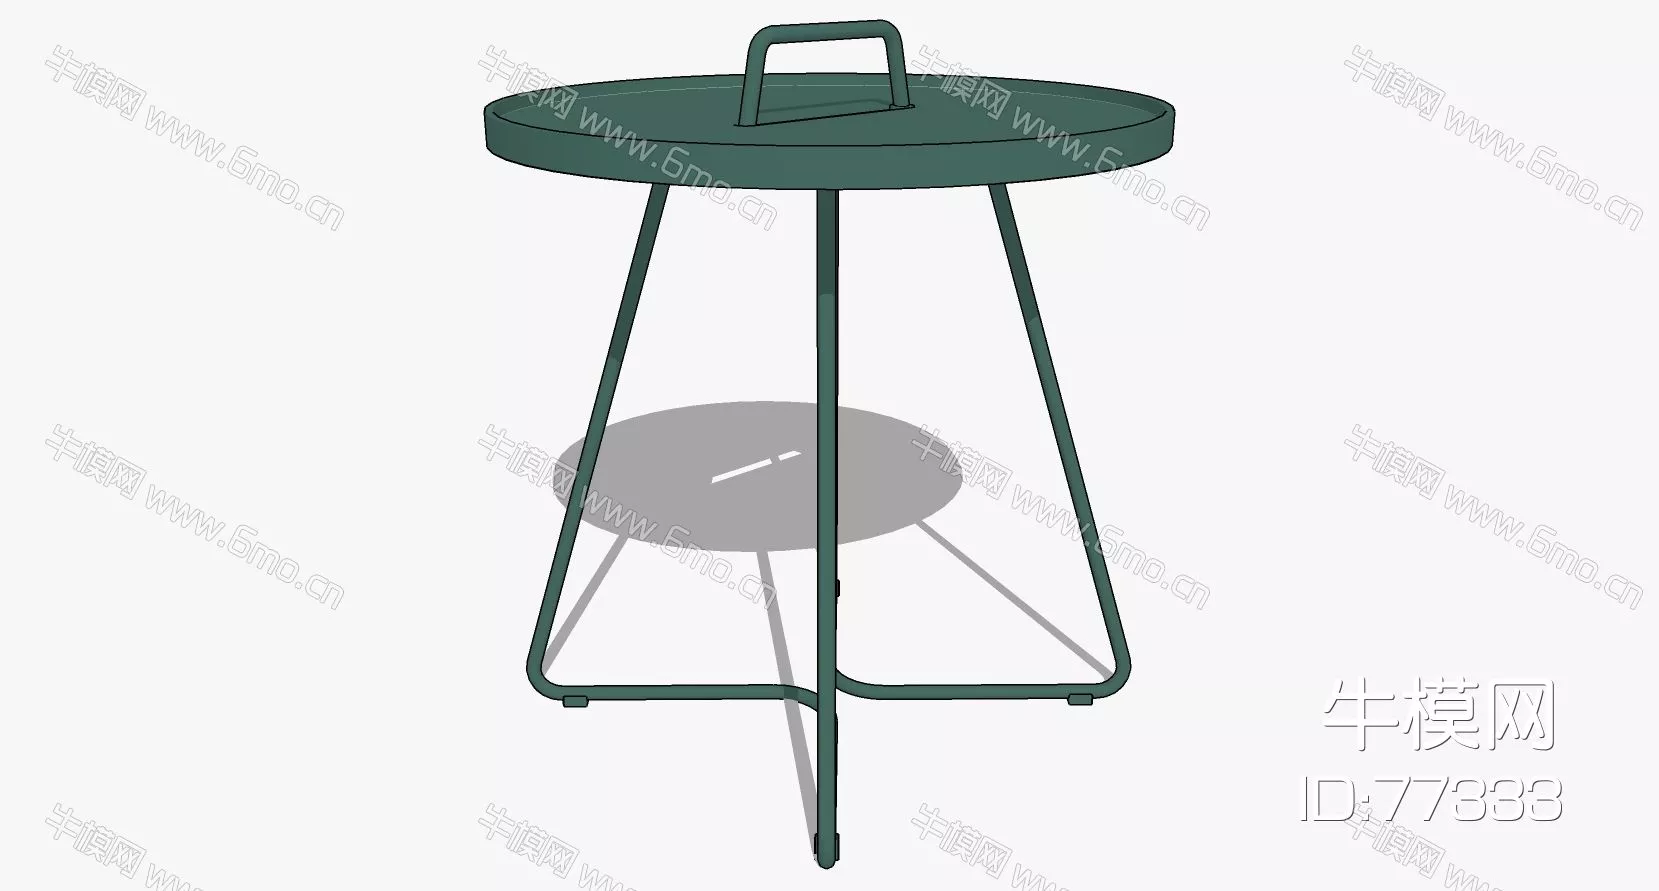 NORDIC SIDE TABLE - SKETCHUP 3D MODEL - ENSCAPE - 77333